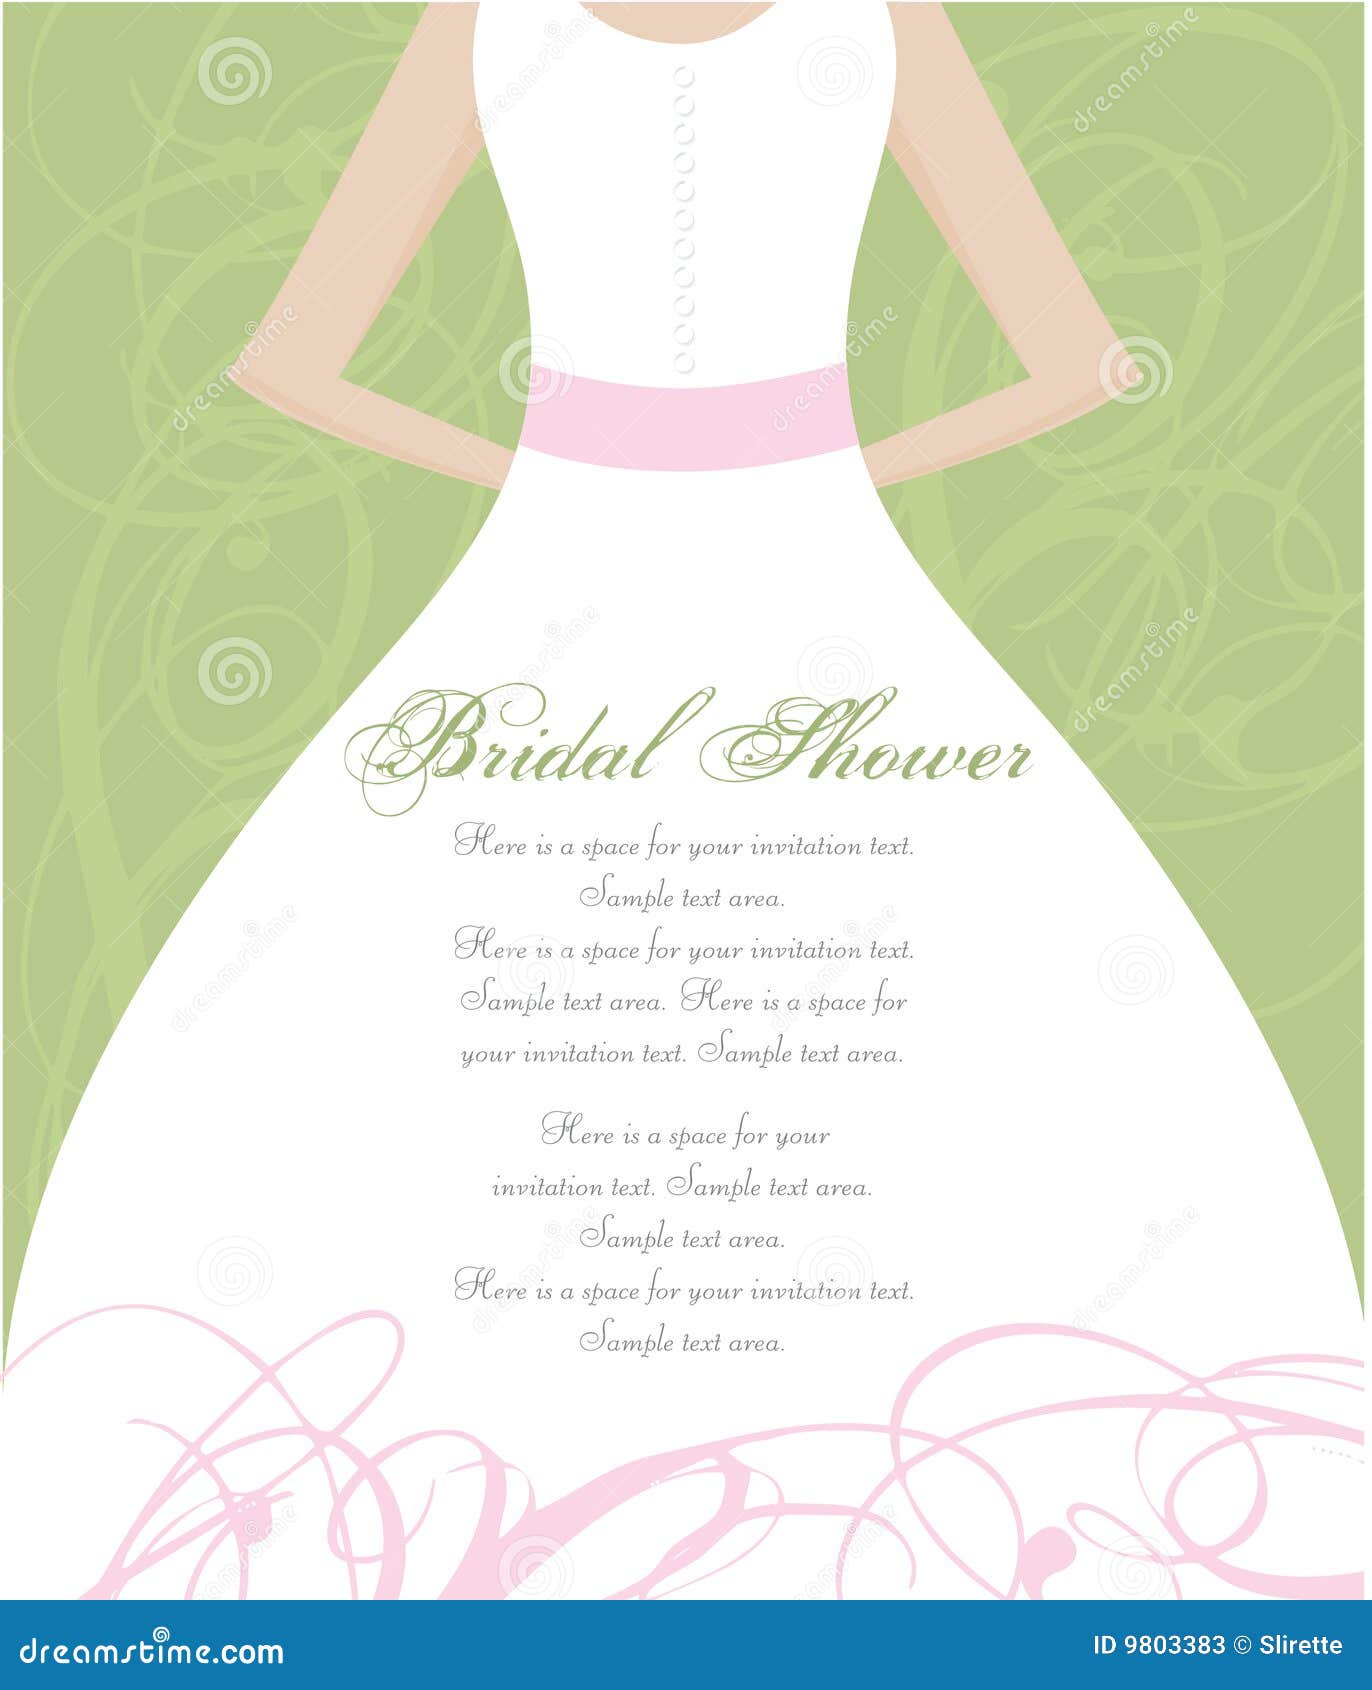 bridal shower invitation clipart - photo #10